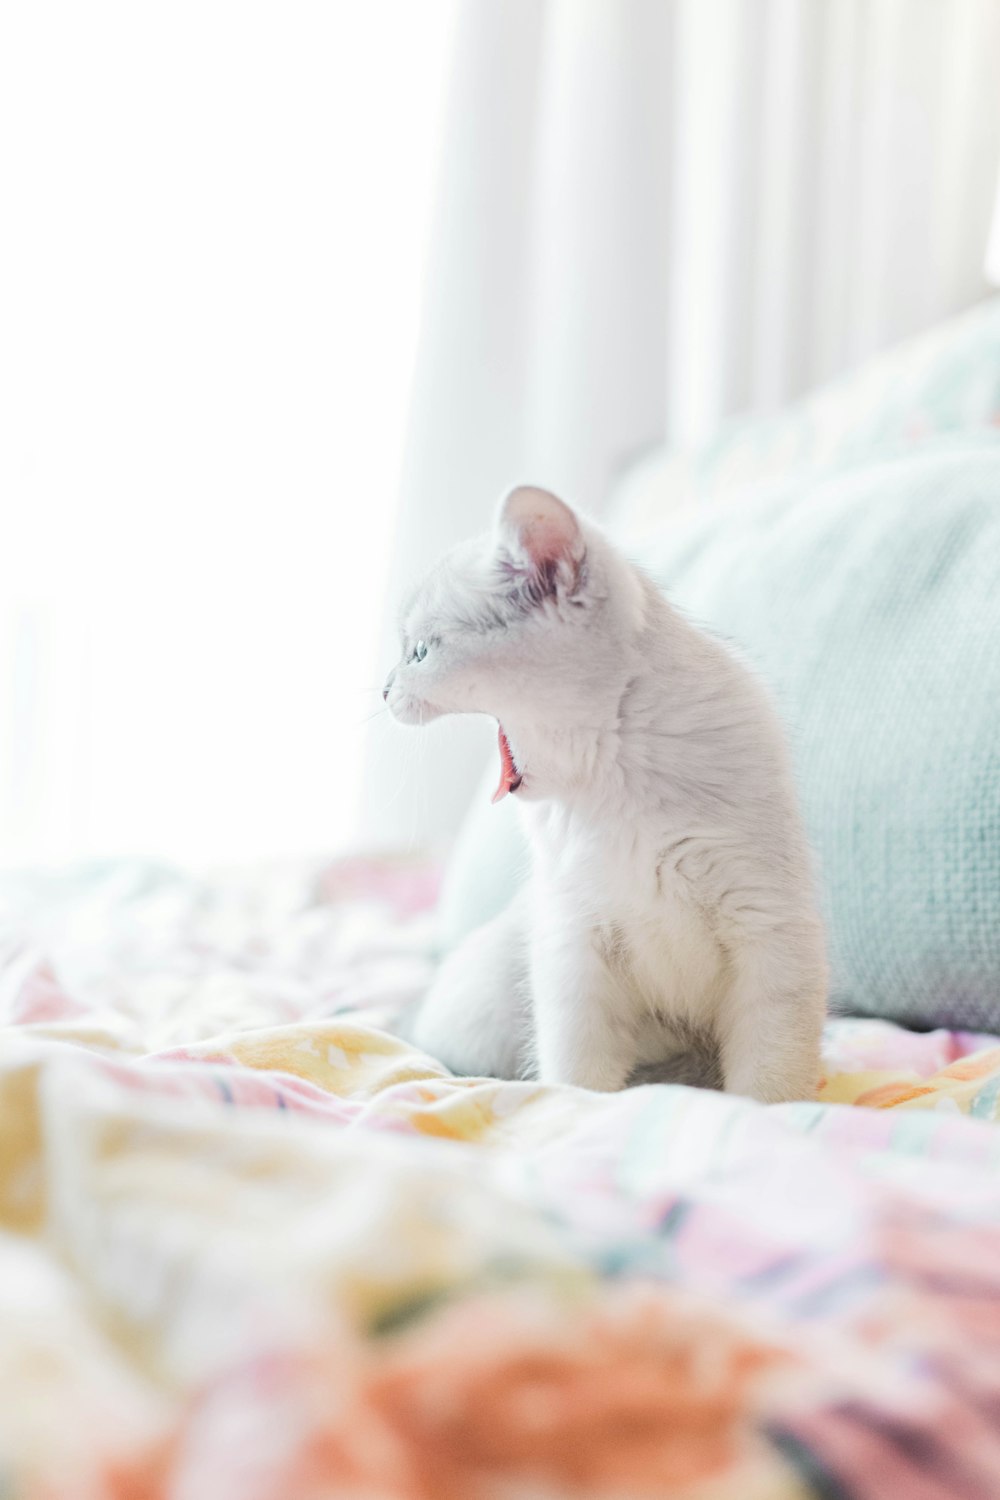 chat blanc sur textile blanc et bleu